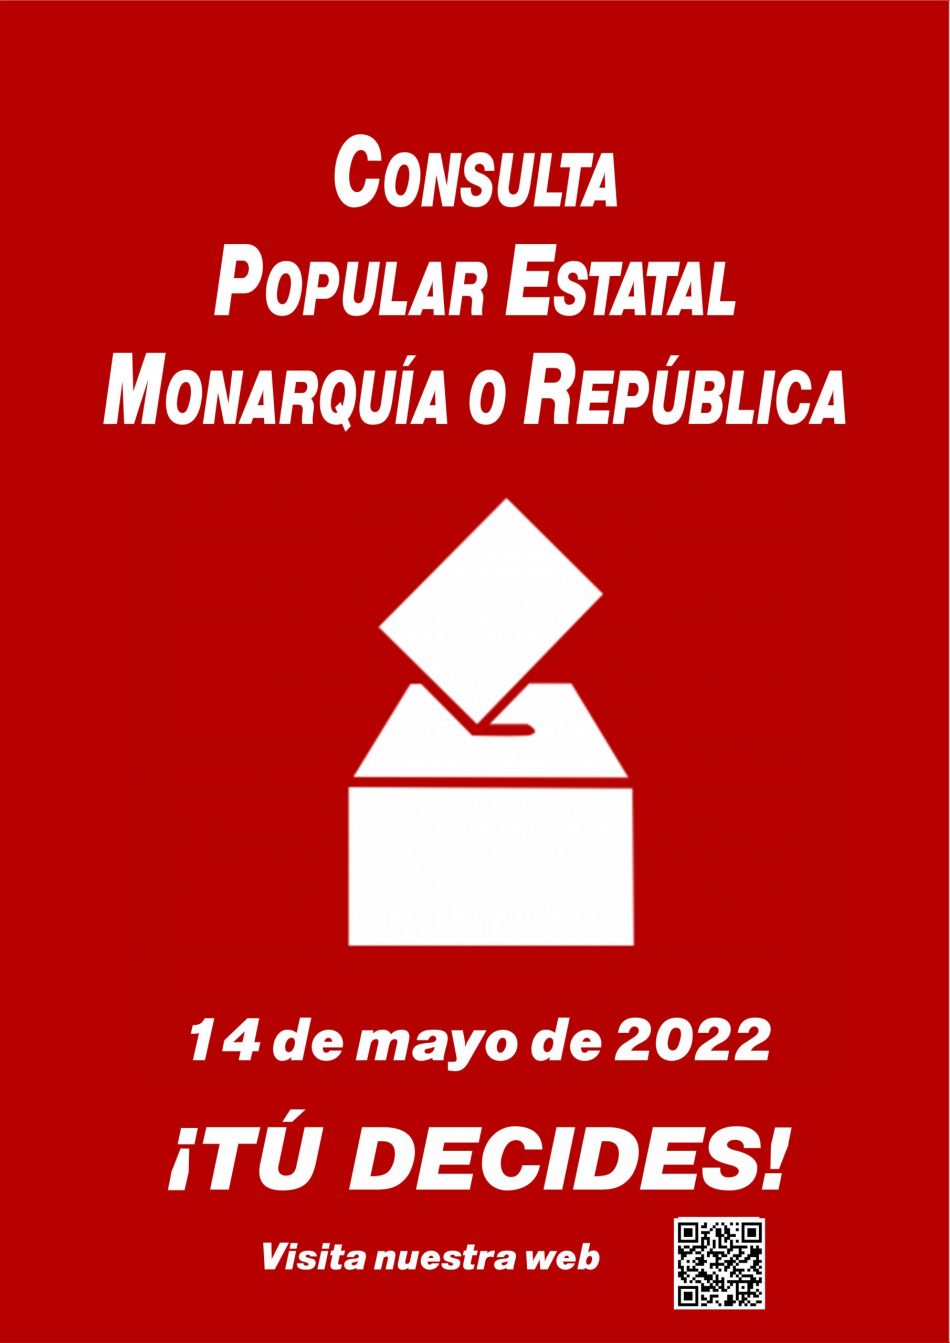 Consulta Popular Estatal Monarquía o República el 14 de mayo: «la previsión es que superemos los 700 puntos de votación, organizados por la gente con sus propios recursos y medios»